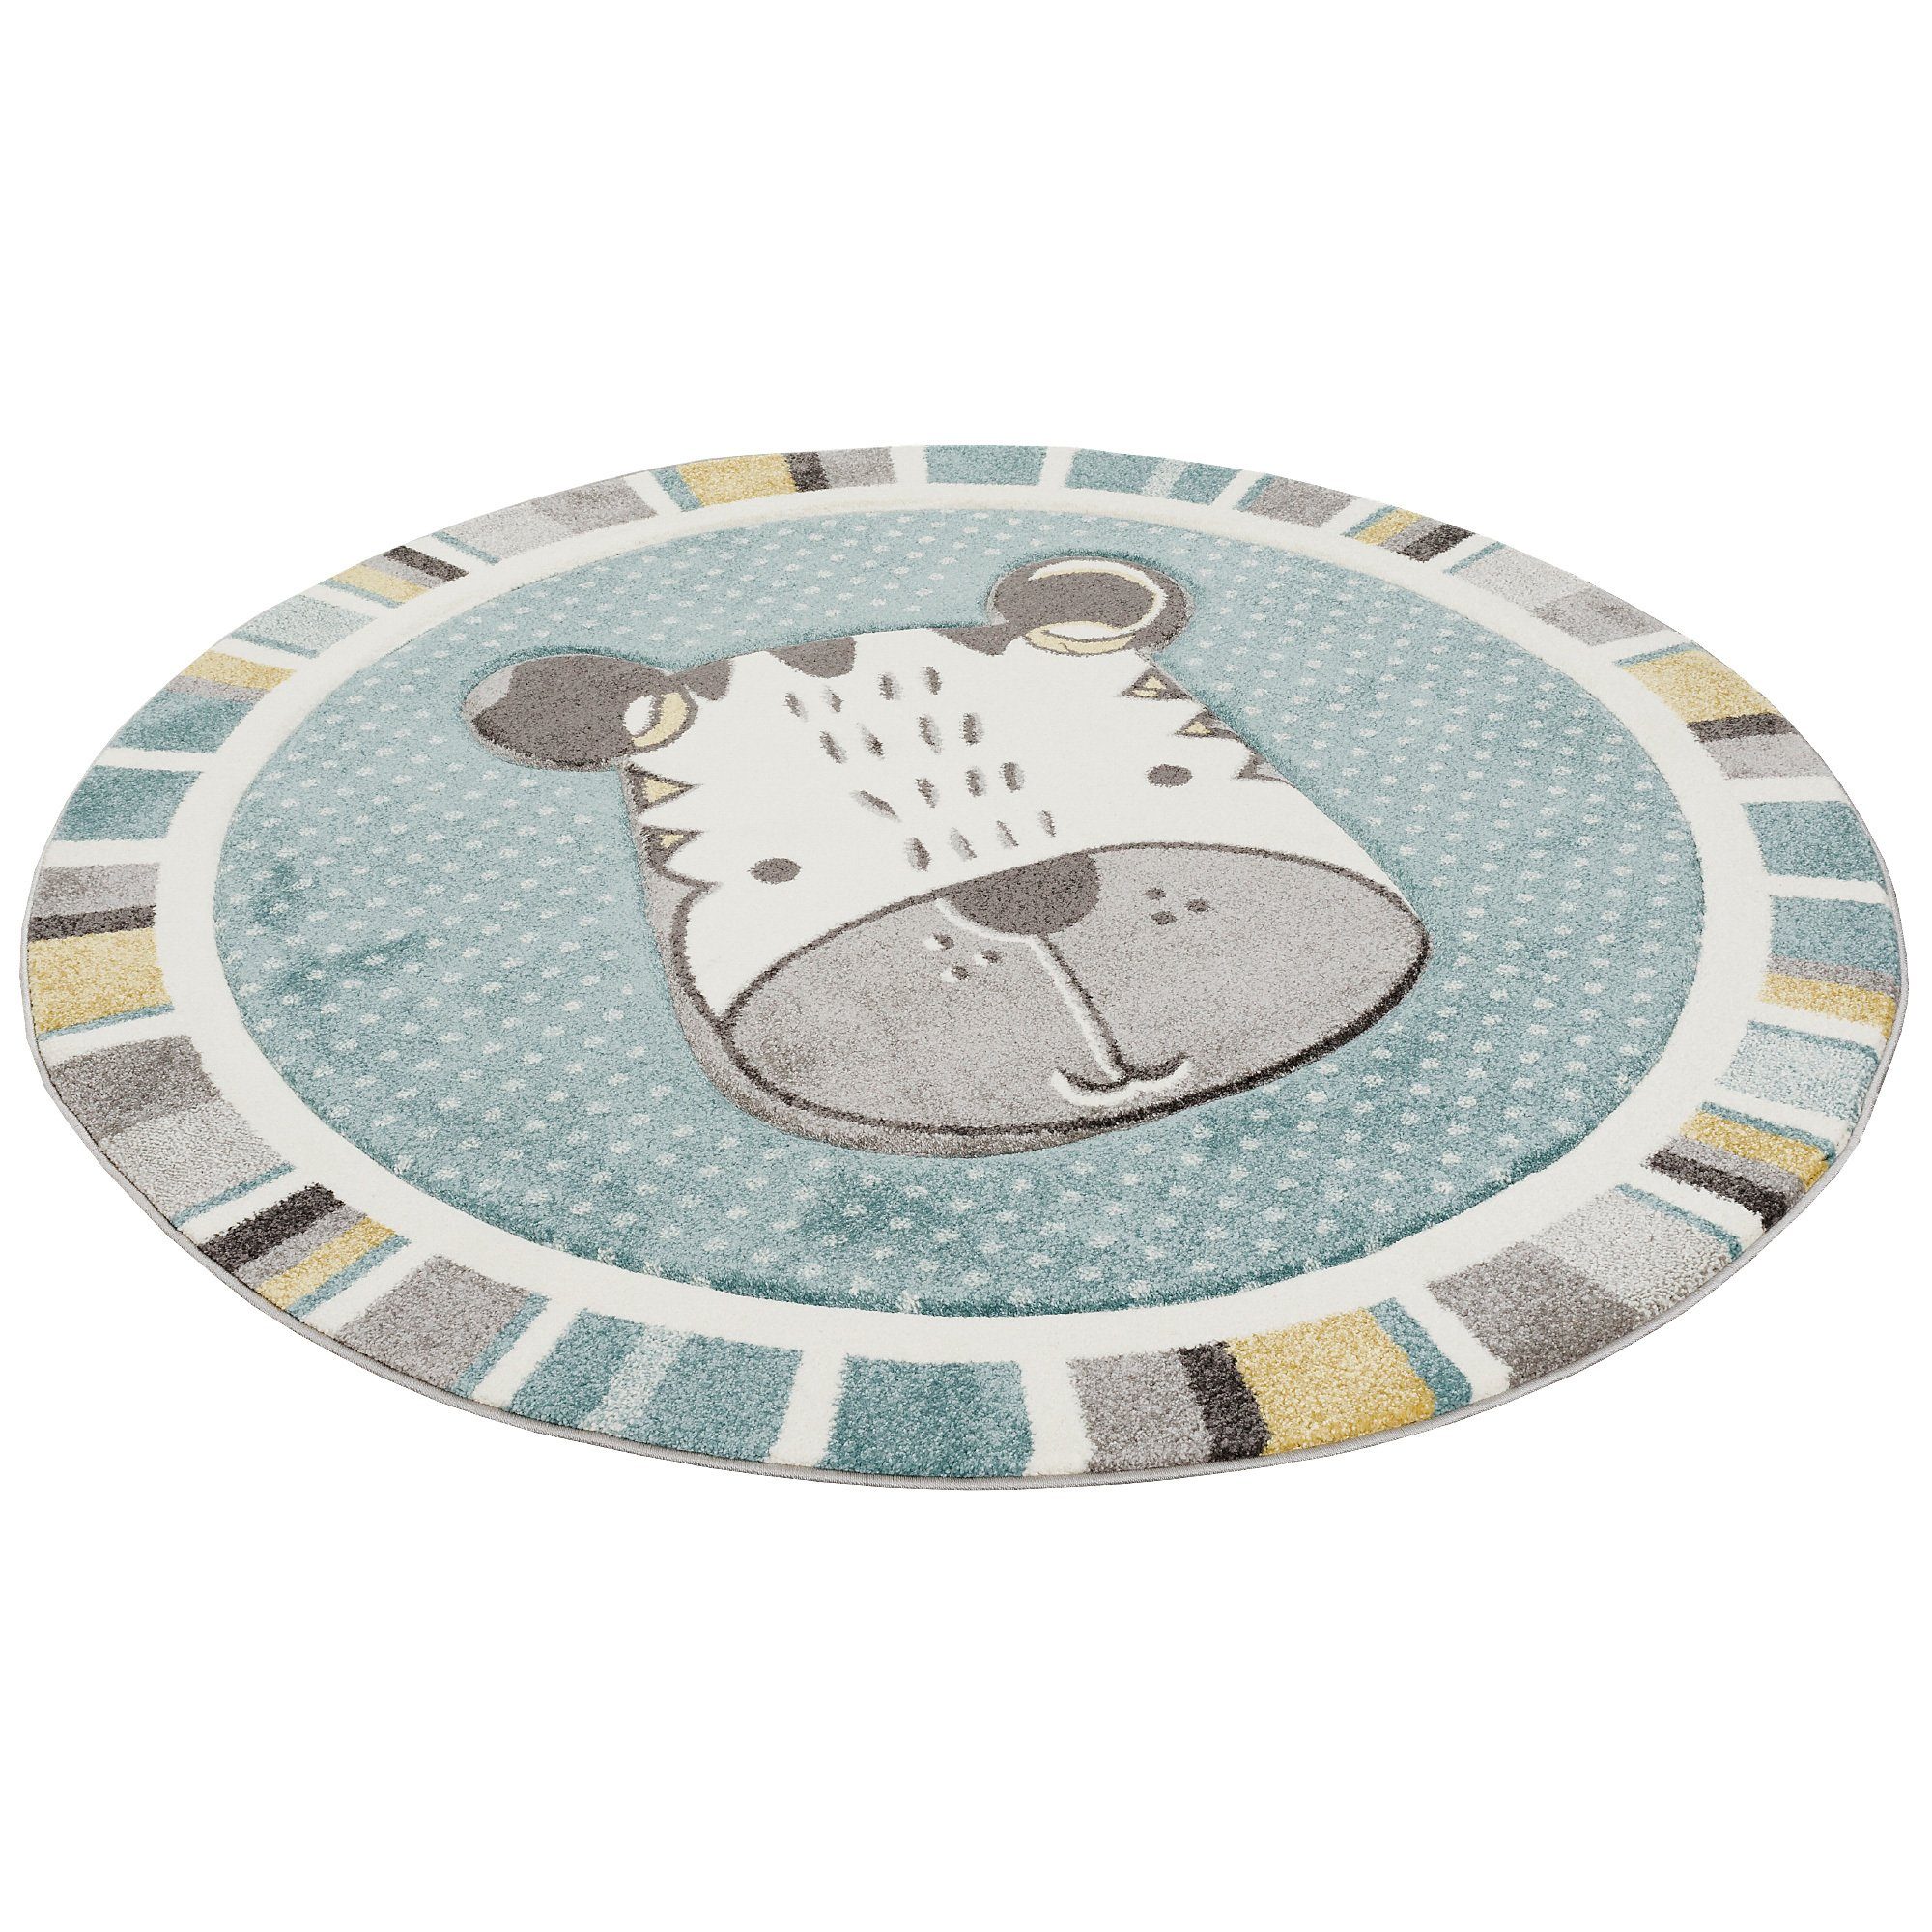 SWECOMZE Flauschige Kinderteppich AFFE,Durchmesser 60 cm rutschfest Abwaschbar Spielteppich für Babyzimmer Rund Teppich Kurzflor Spielteppich Krabbeldecke Tiere Motive 